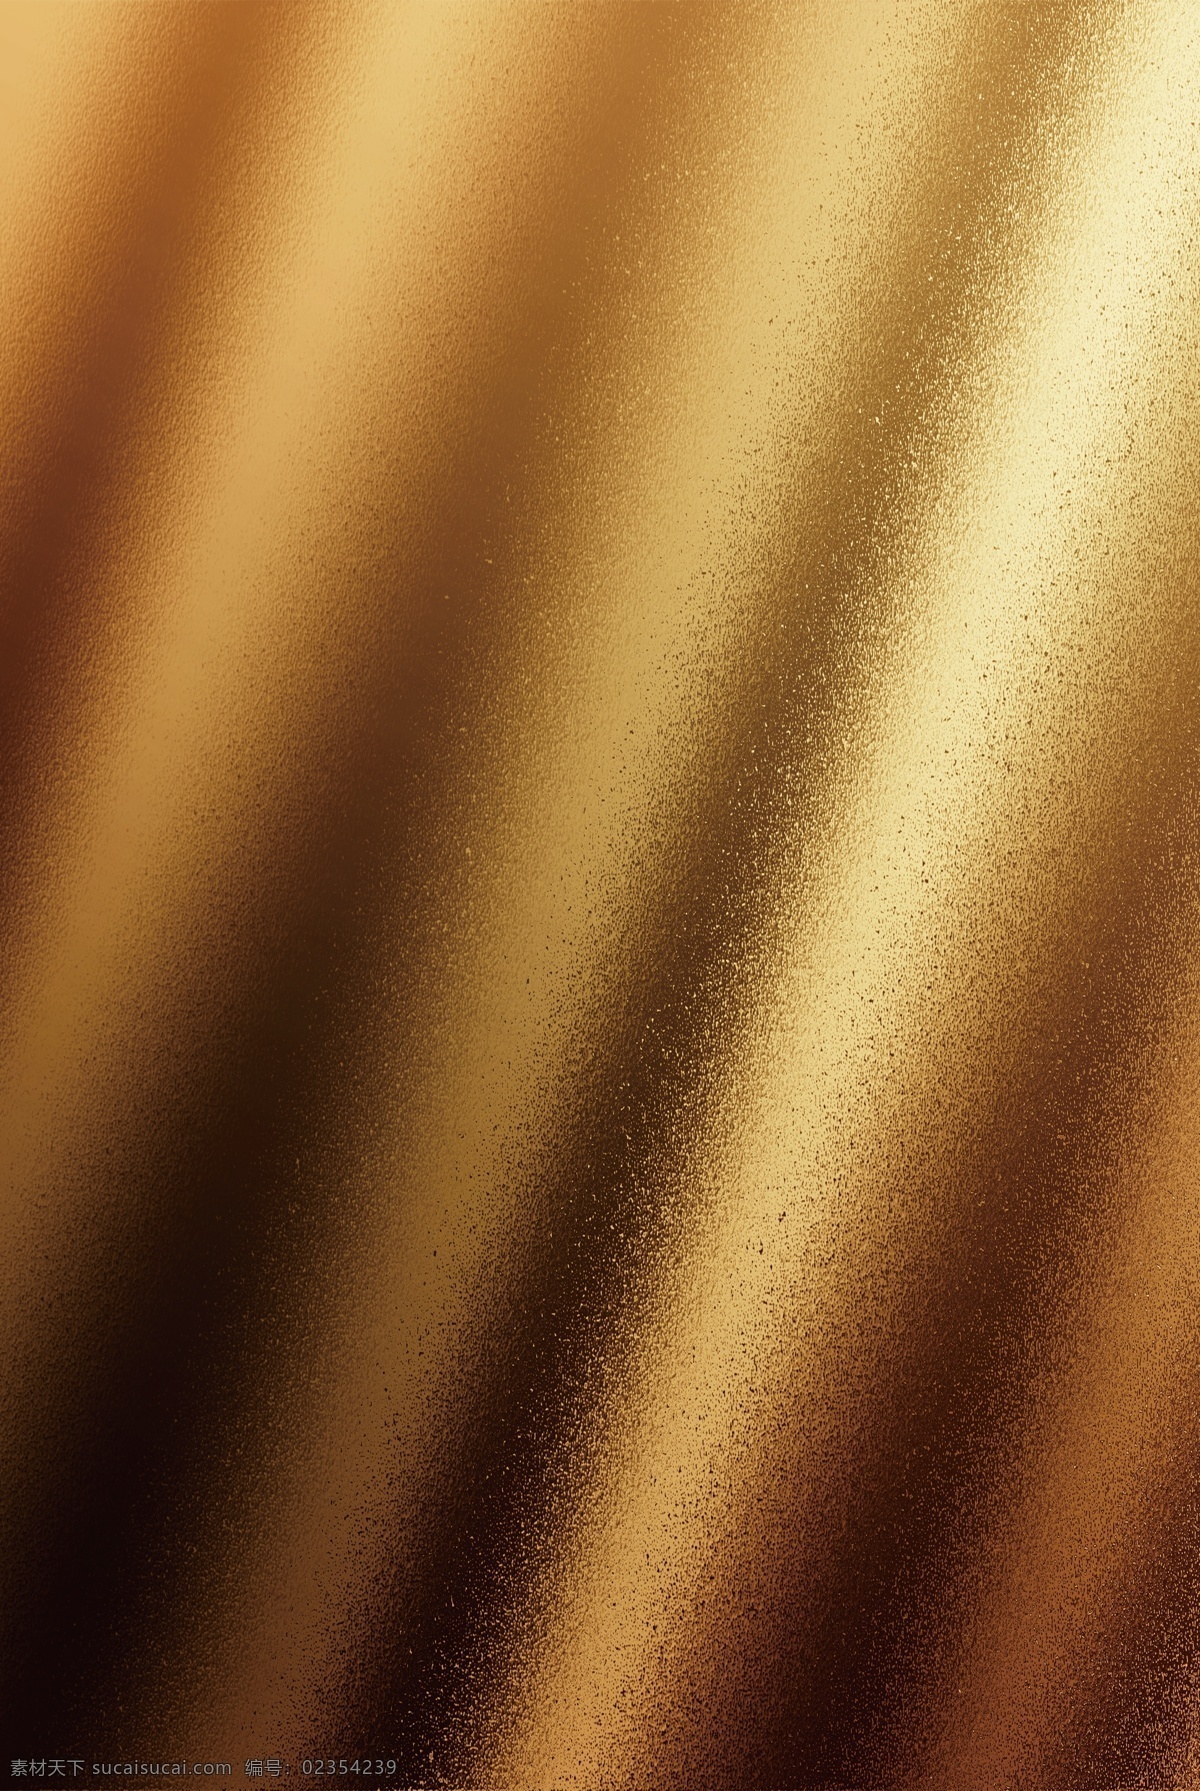 黄金背景 金黄色背景 金属贴图 金属背景 金属质感 质感背景 金属 金黄色 黄金 纹理 材质 质感 底纹 背景 拉丝 背景底纹